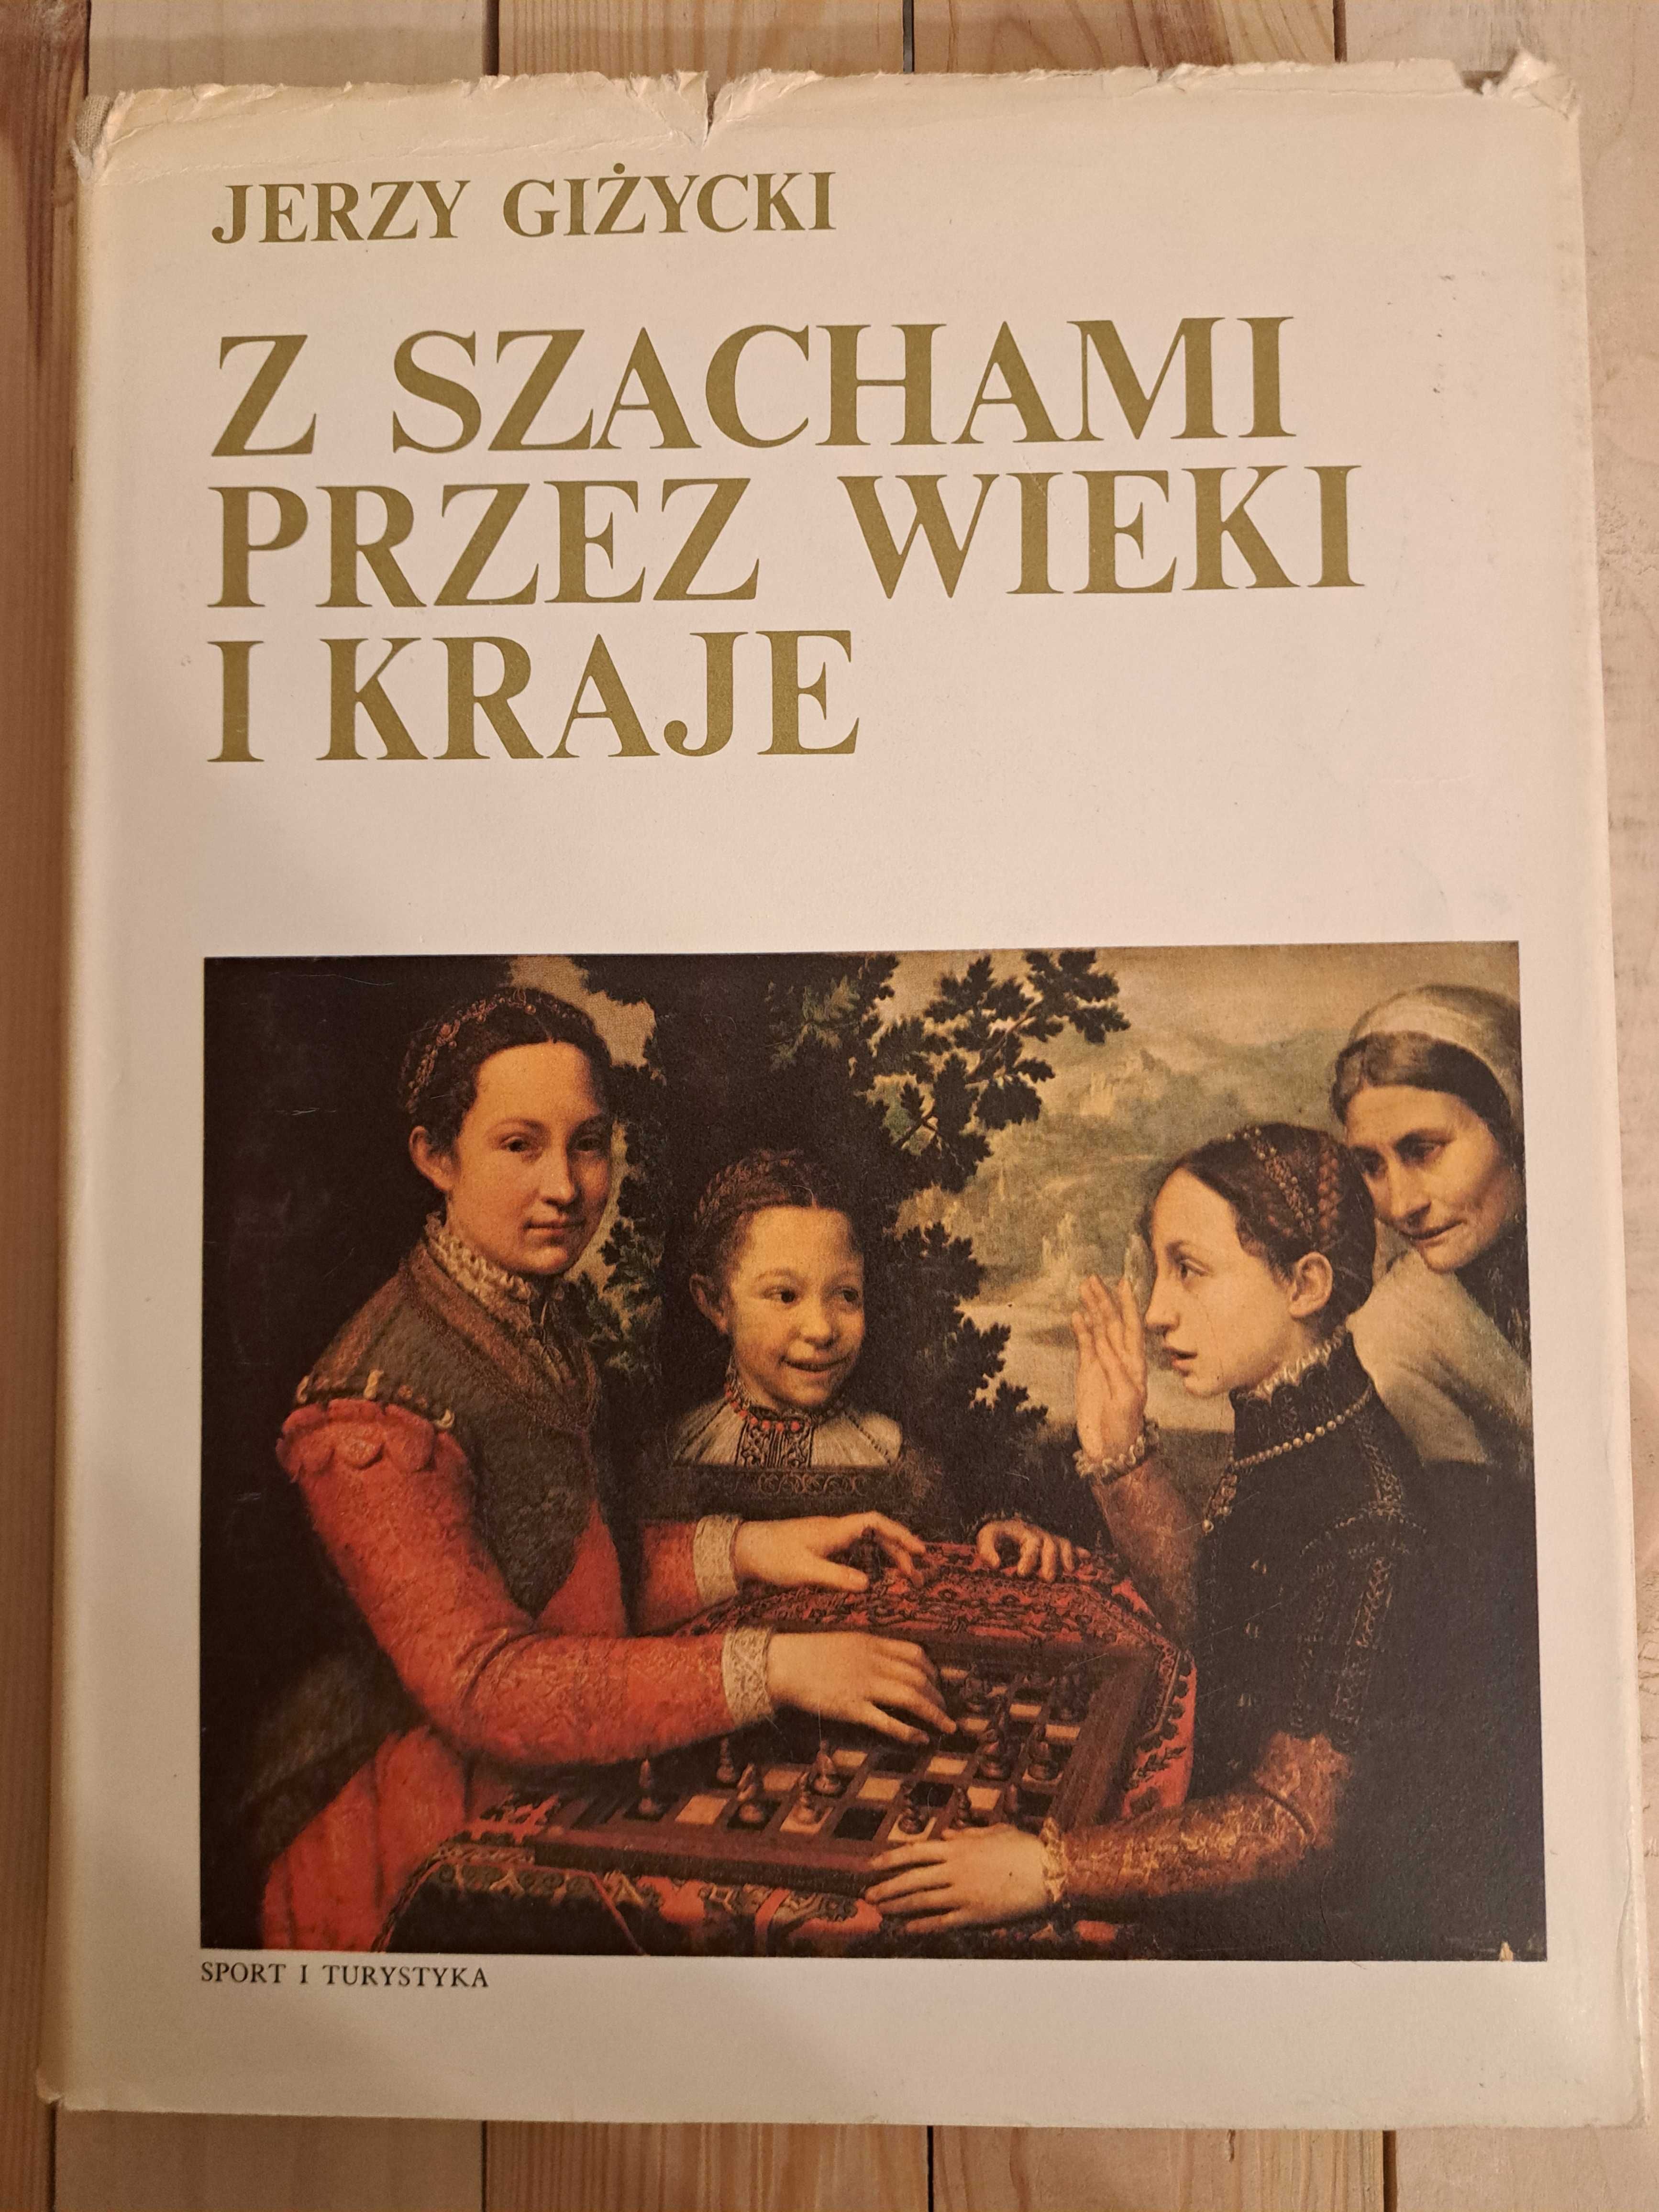 " Z szachami przez wieki i kraje"  Jerzy Giżycki